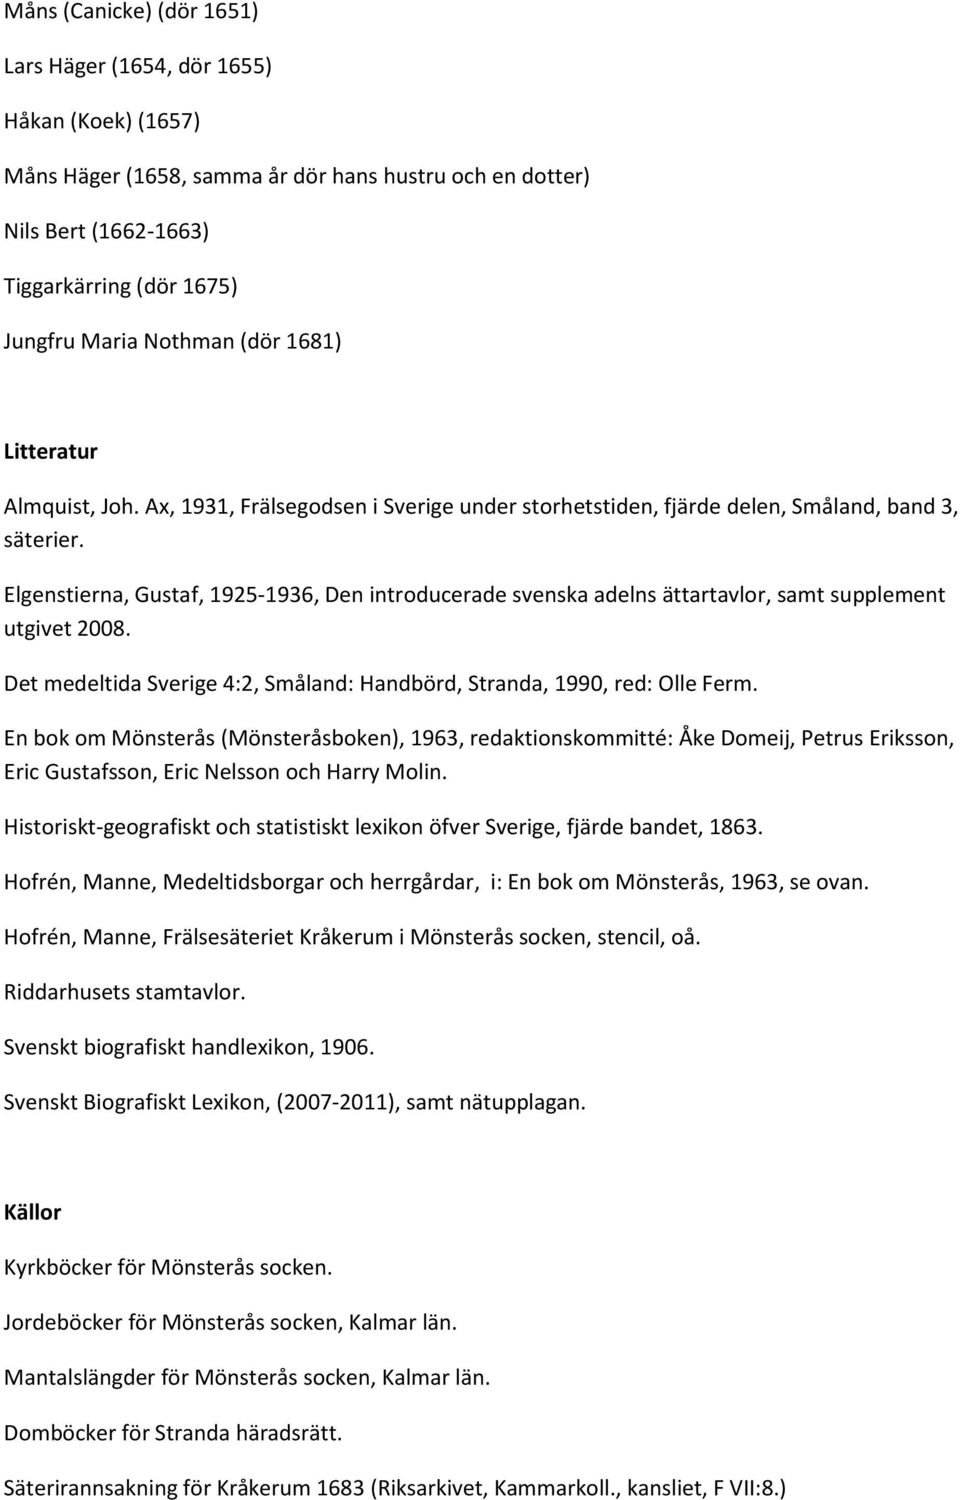 Elgenstierna, Gustaf, 1925-1936, Den introducerade svenska adelns ättartavlor, samt supplement utgivet 2008. Det medeltida Sverige 4:2, Småland: Handbörd, Stranda, 1990, red: Olle Ferm.